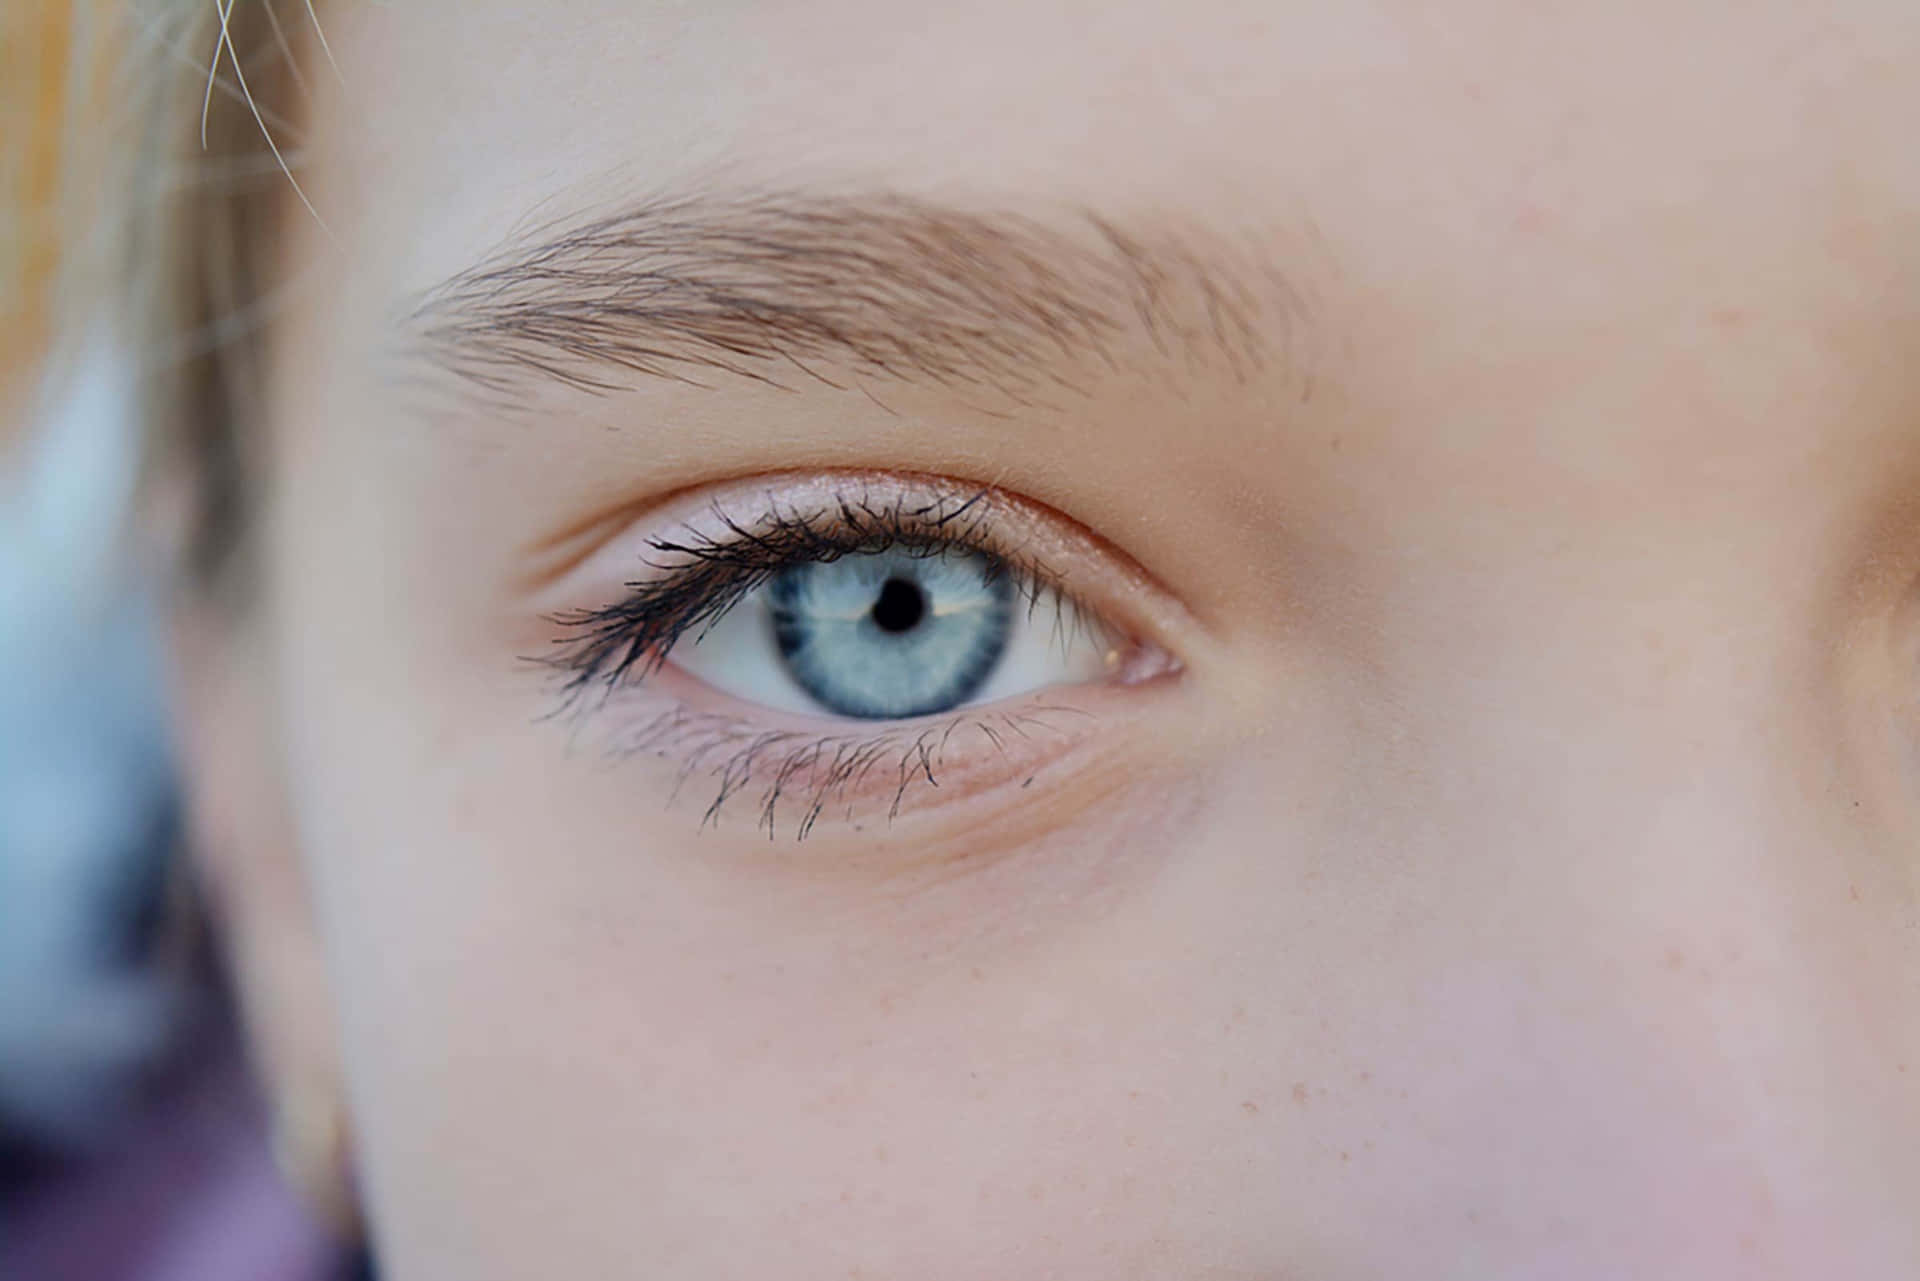 Eyes are those eyes. Бесцветный цвет глаз. Голубые глаза. Бледно голубые глаза. Хрустальный цвет глаз.